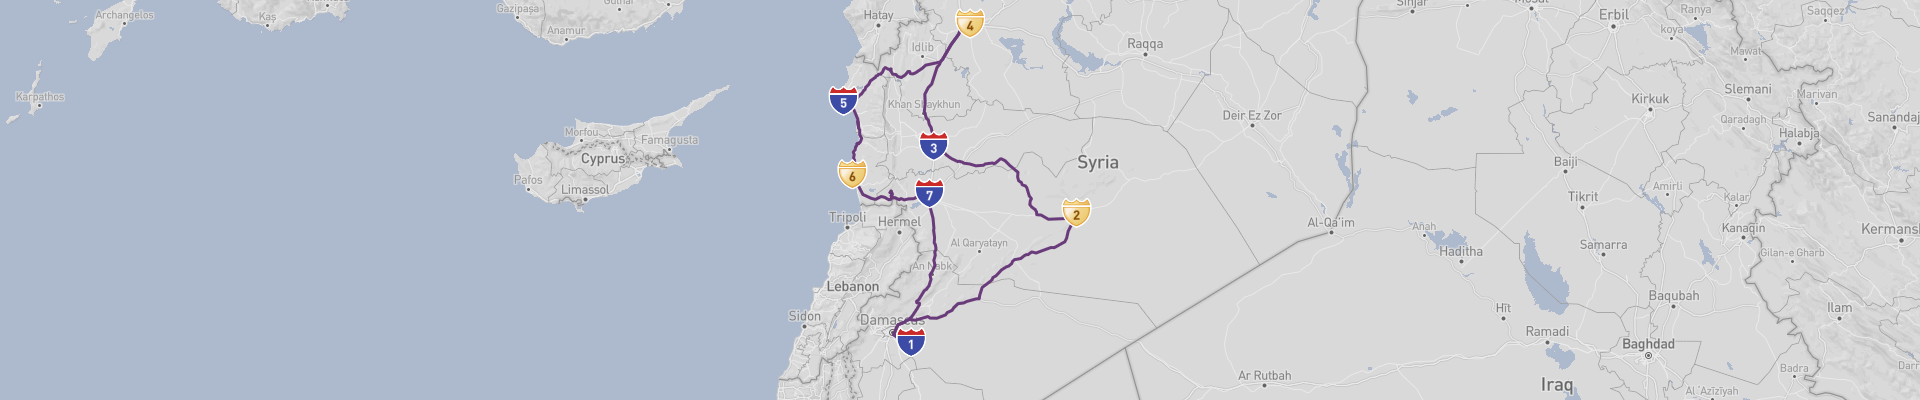 Syria Road Trip